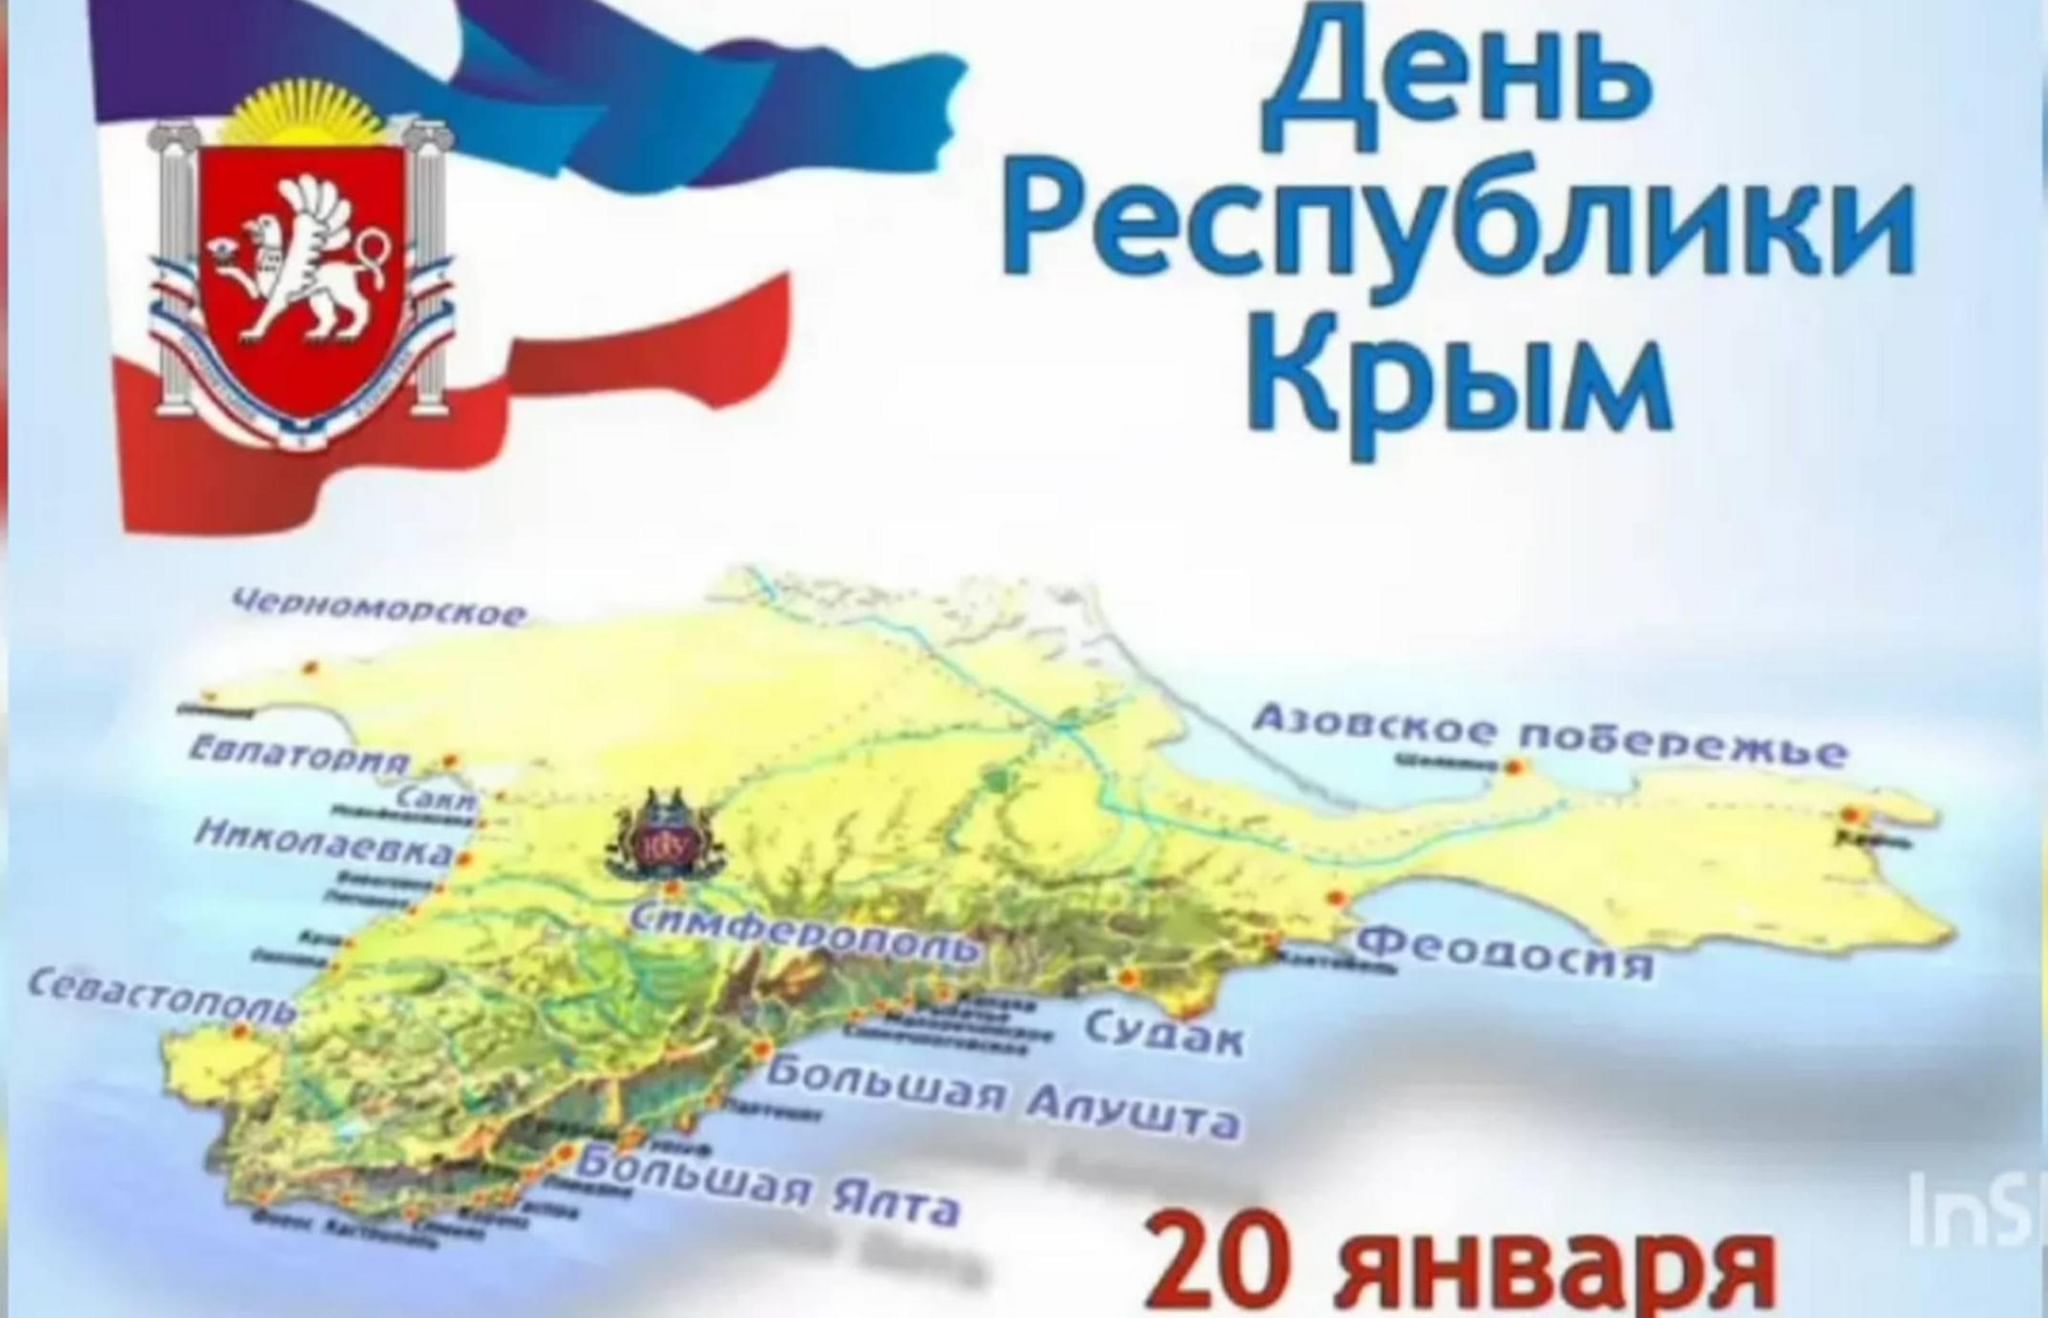 20 Января отмечается день Республики Крым